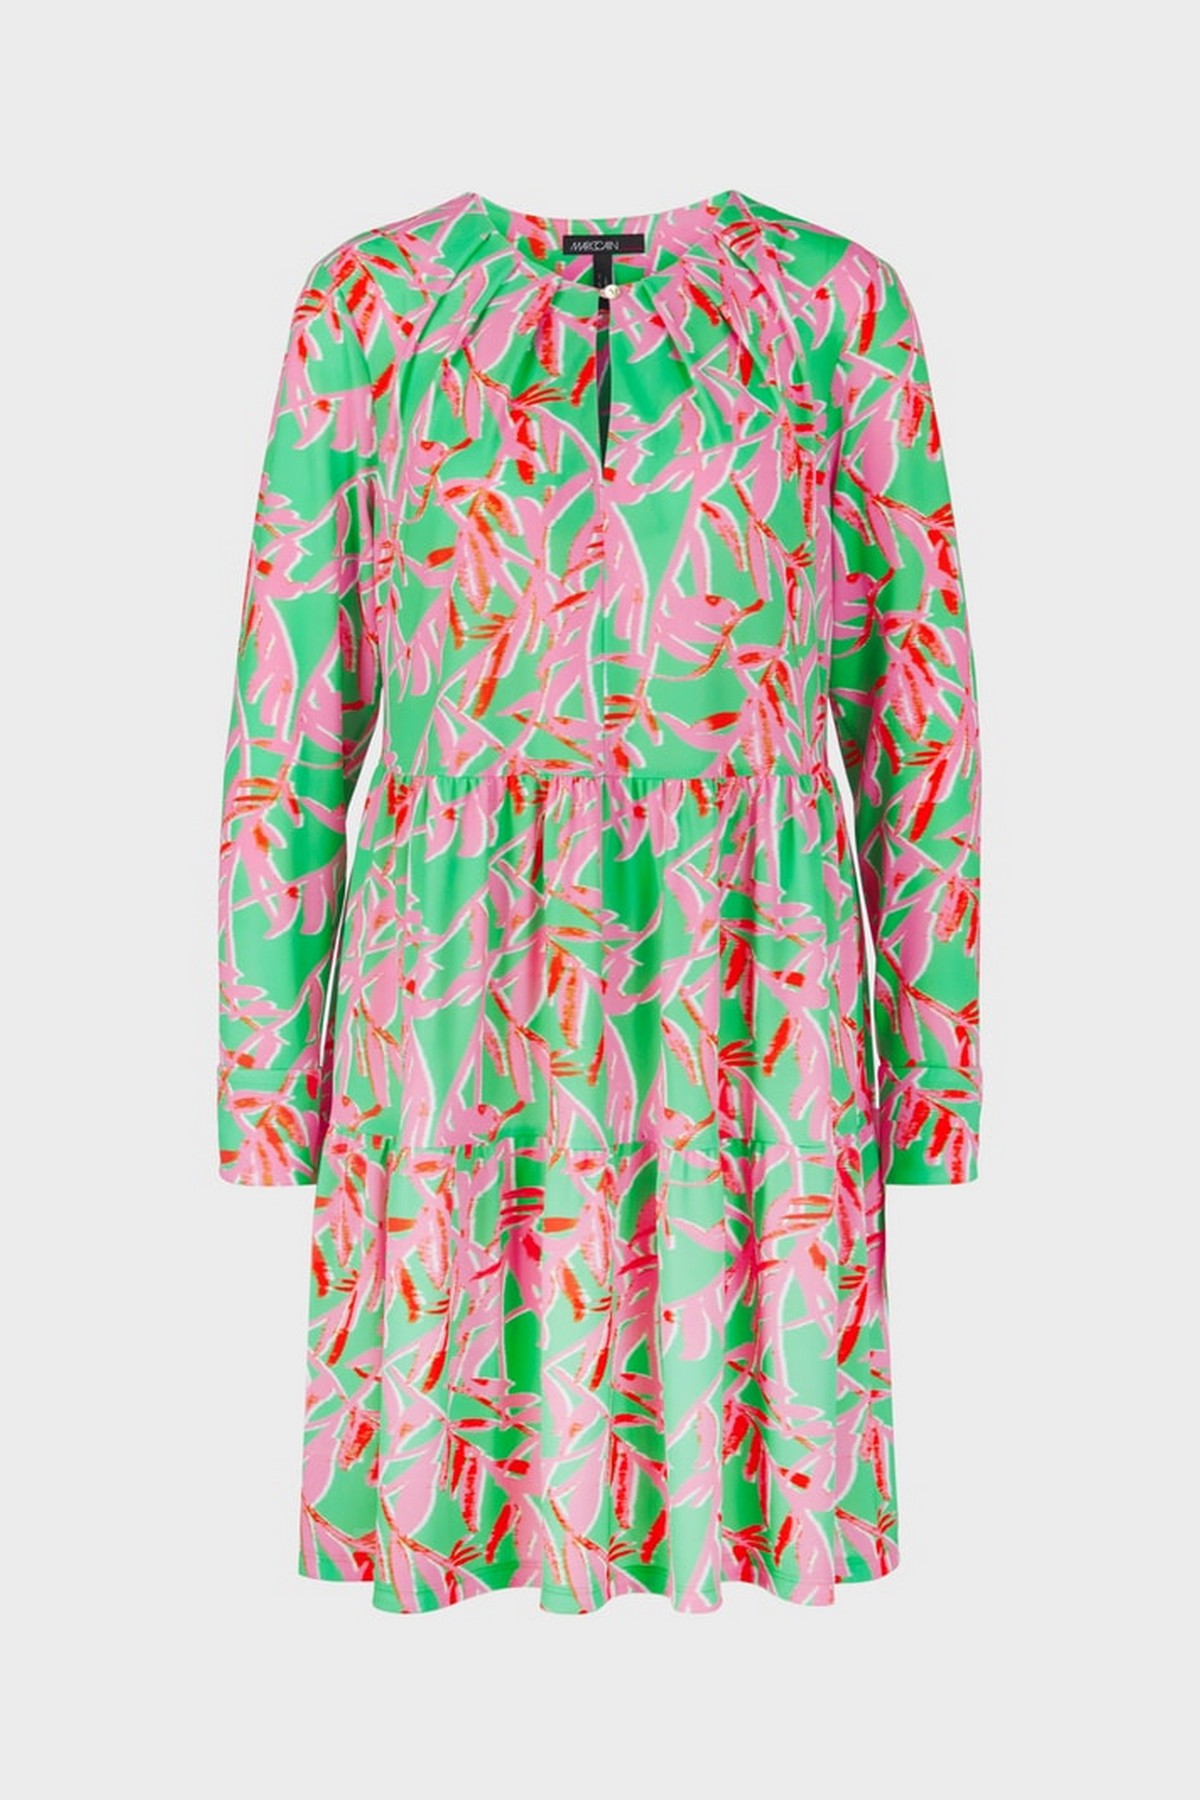 Kleed V A-lijn print in de kleur roze groen van het merk Marc Cain Collections